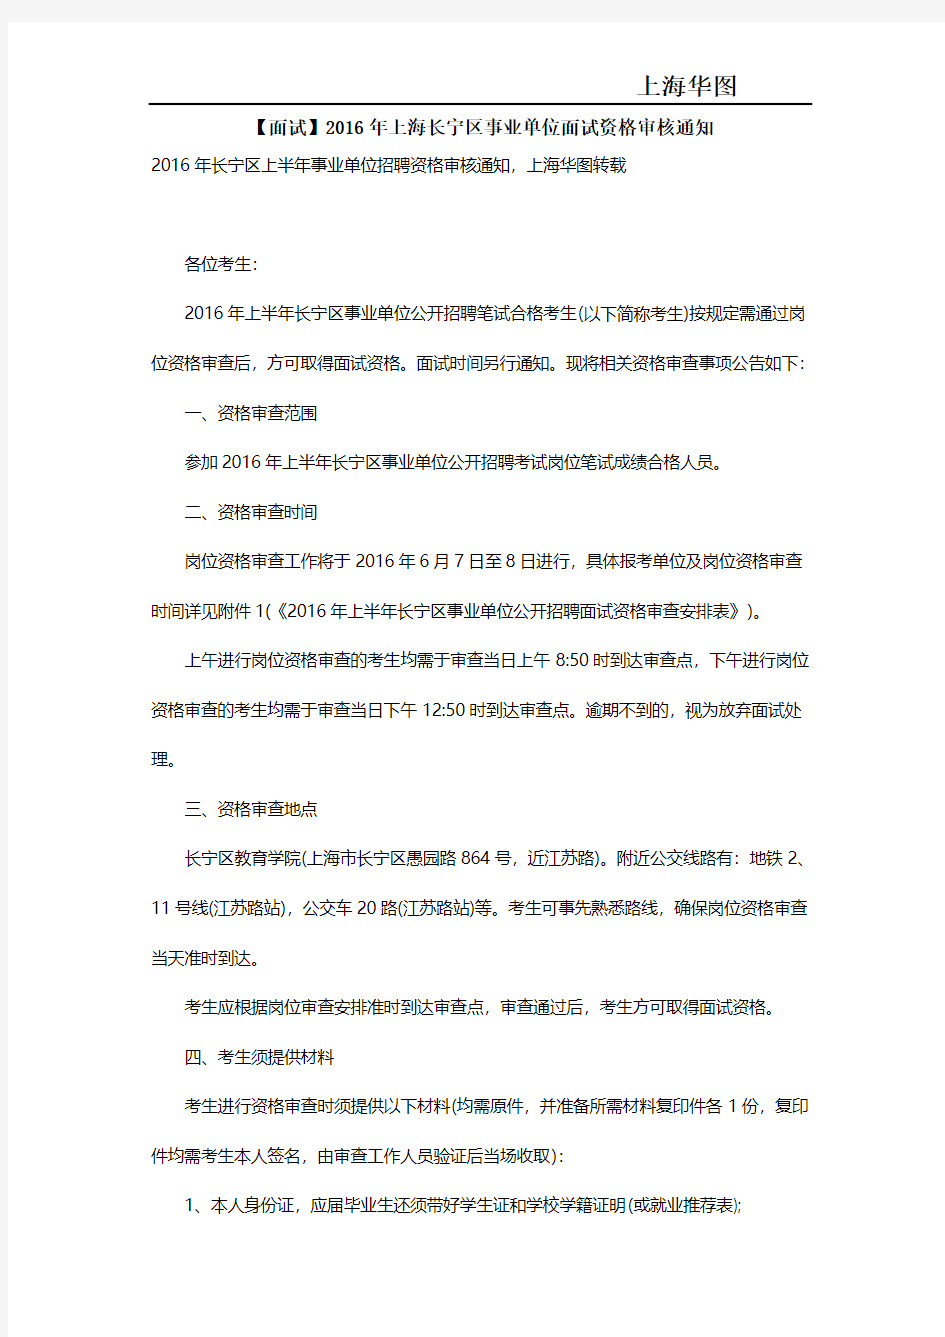 【面试】2016年上海长宁区事业单位面试资格审核通知